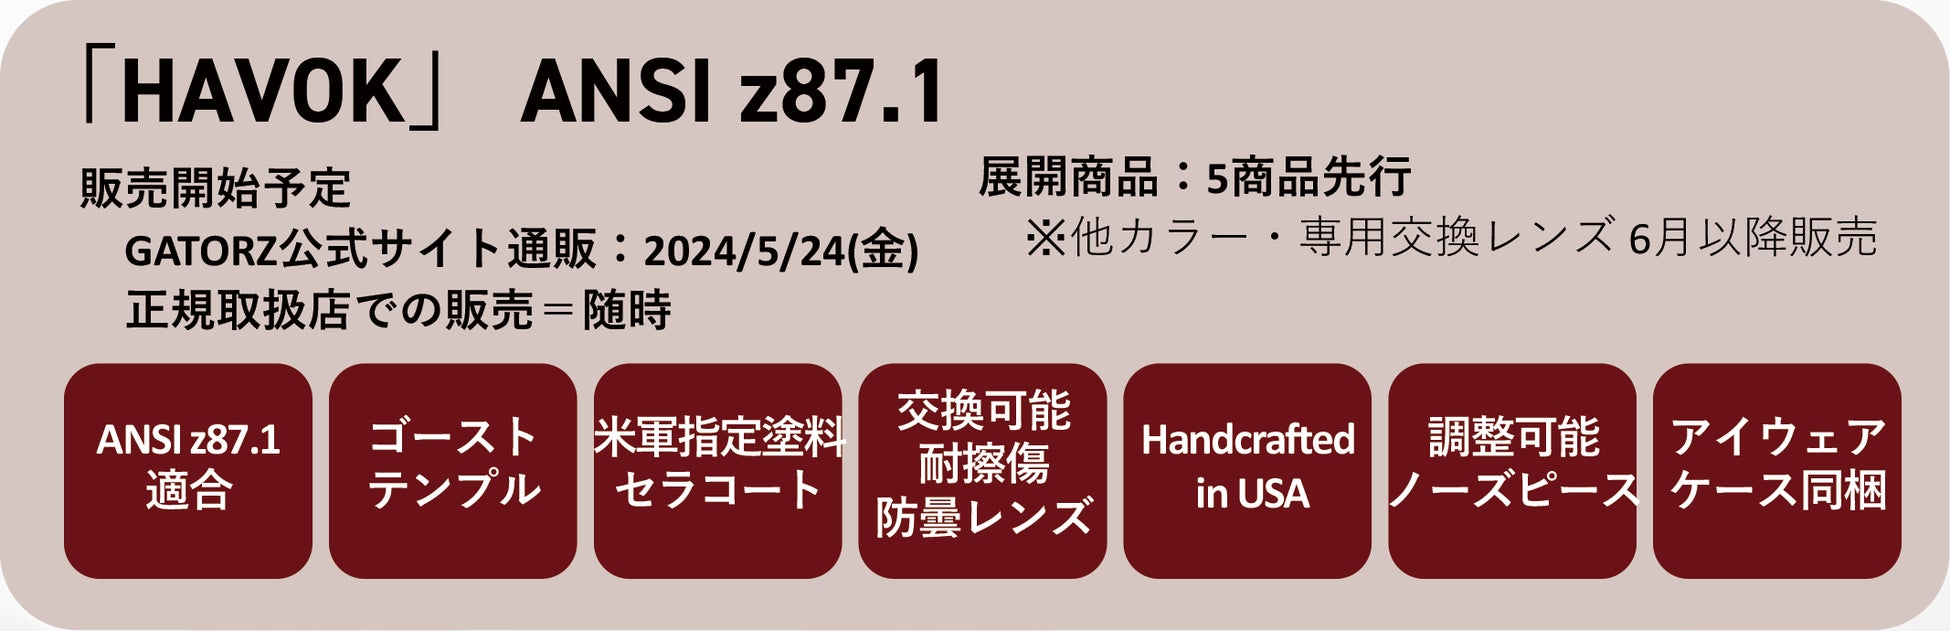 全種ANSIz87.1対応『HAVOK(ハボック)』新発売